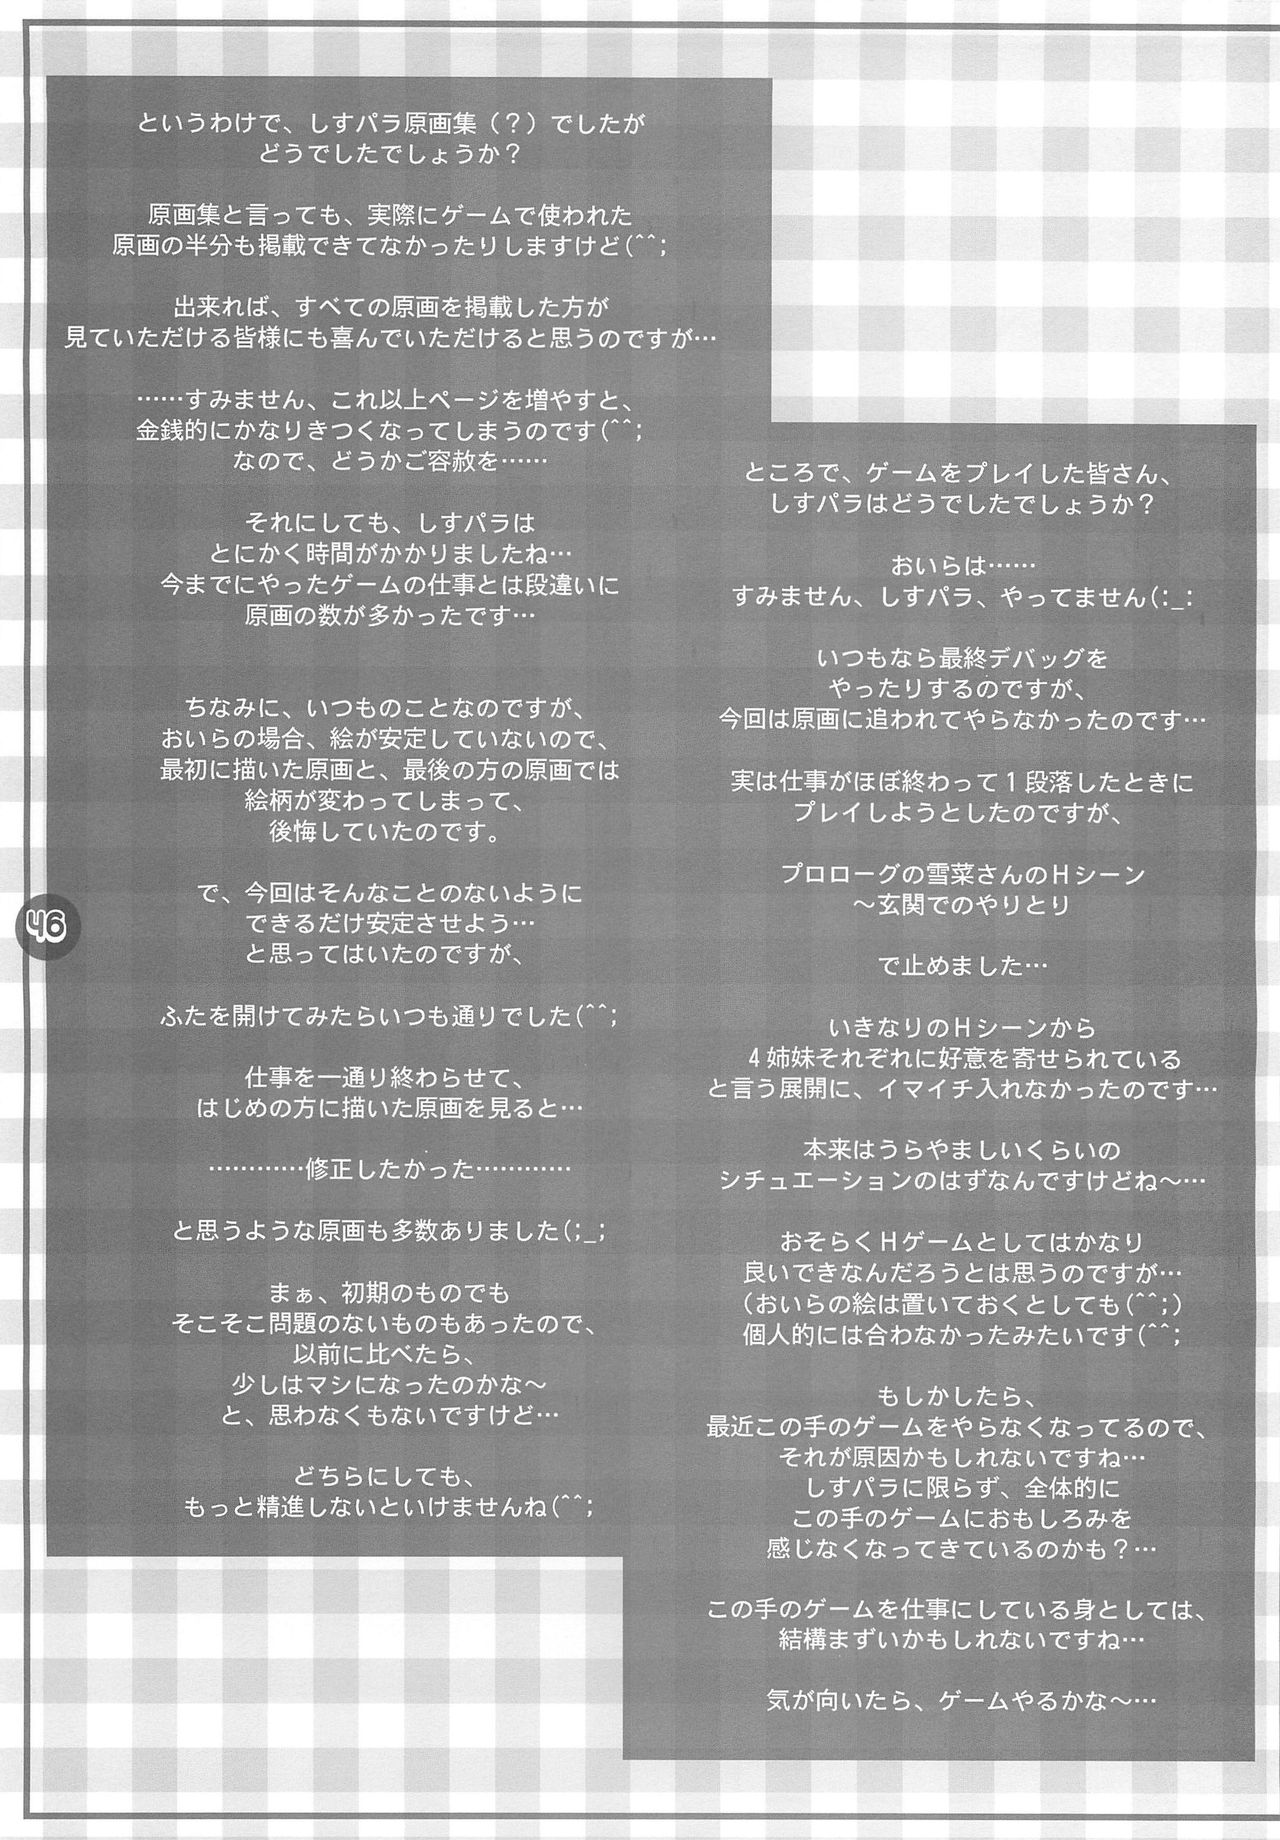 (C64) [Mahirutei (Izumi Mahiru)] Sister paradise (C64) [まひる亭 (泉まひる)] Sister paradise